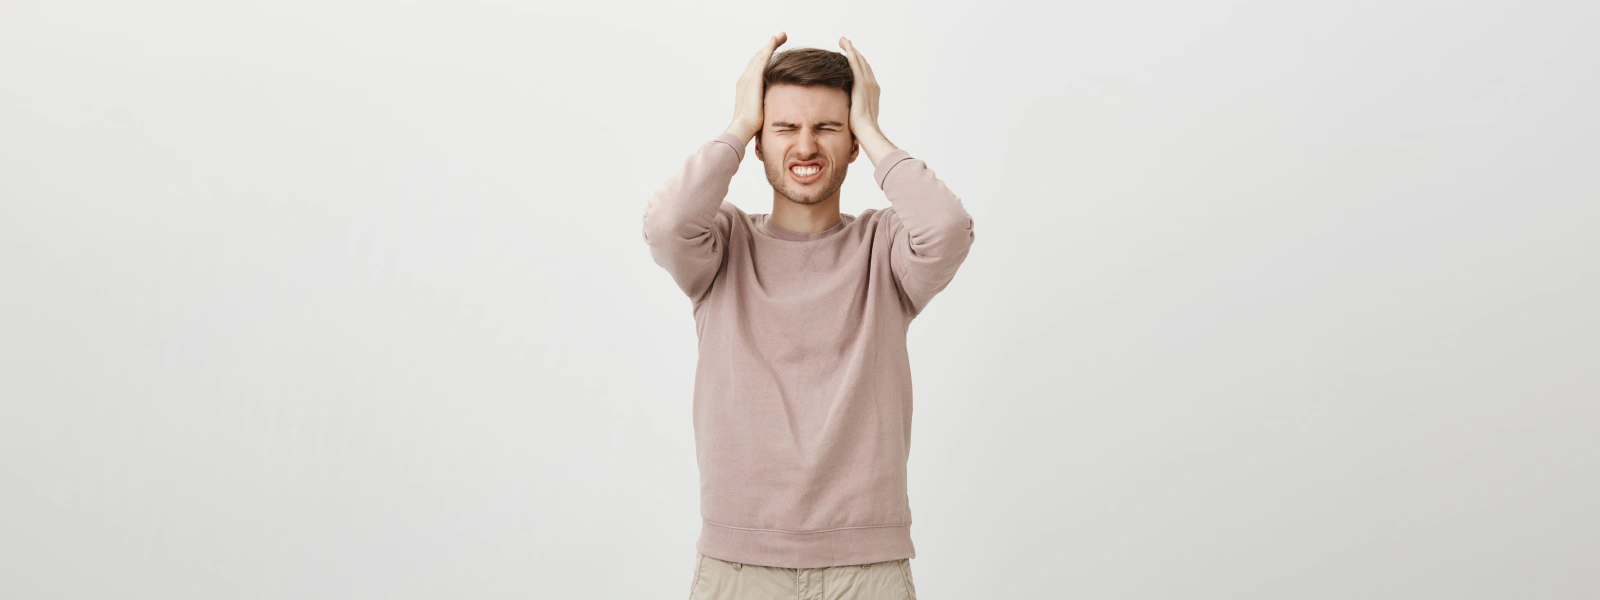 Baş Ağrısı ve Migren Arasındaki Farklar Nelerdir?